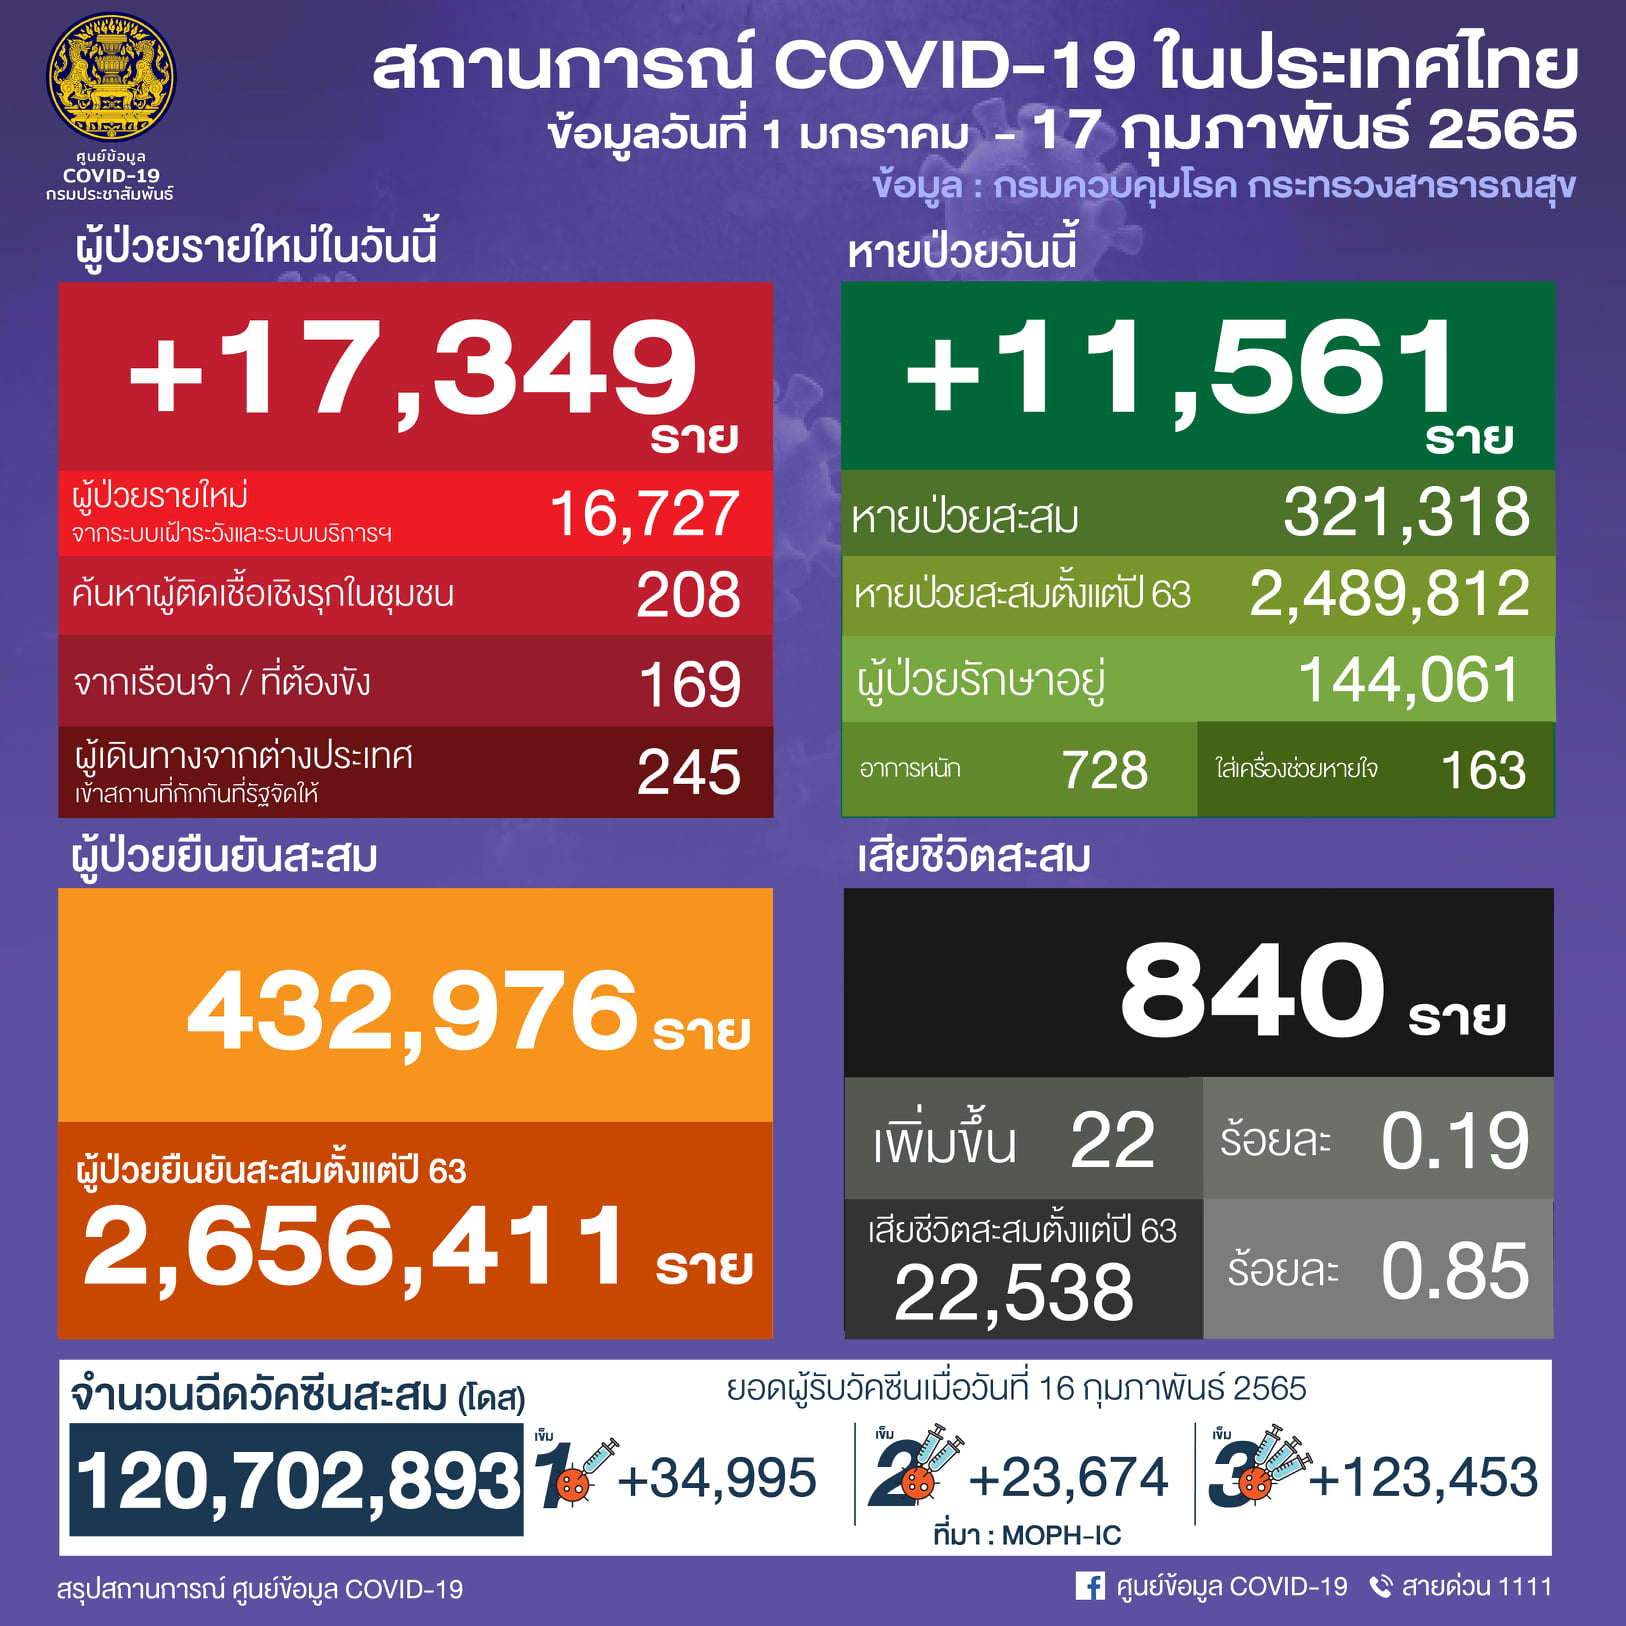 タイ 17,349人陽性 22人死亡／バンコク 3,063人陽性／サムットプラカン 868人陽性／チョンブリ 821人陽性［2022年2月17日発表］